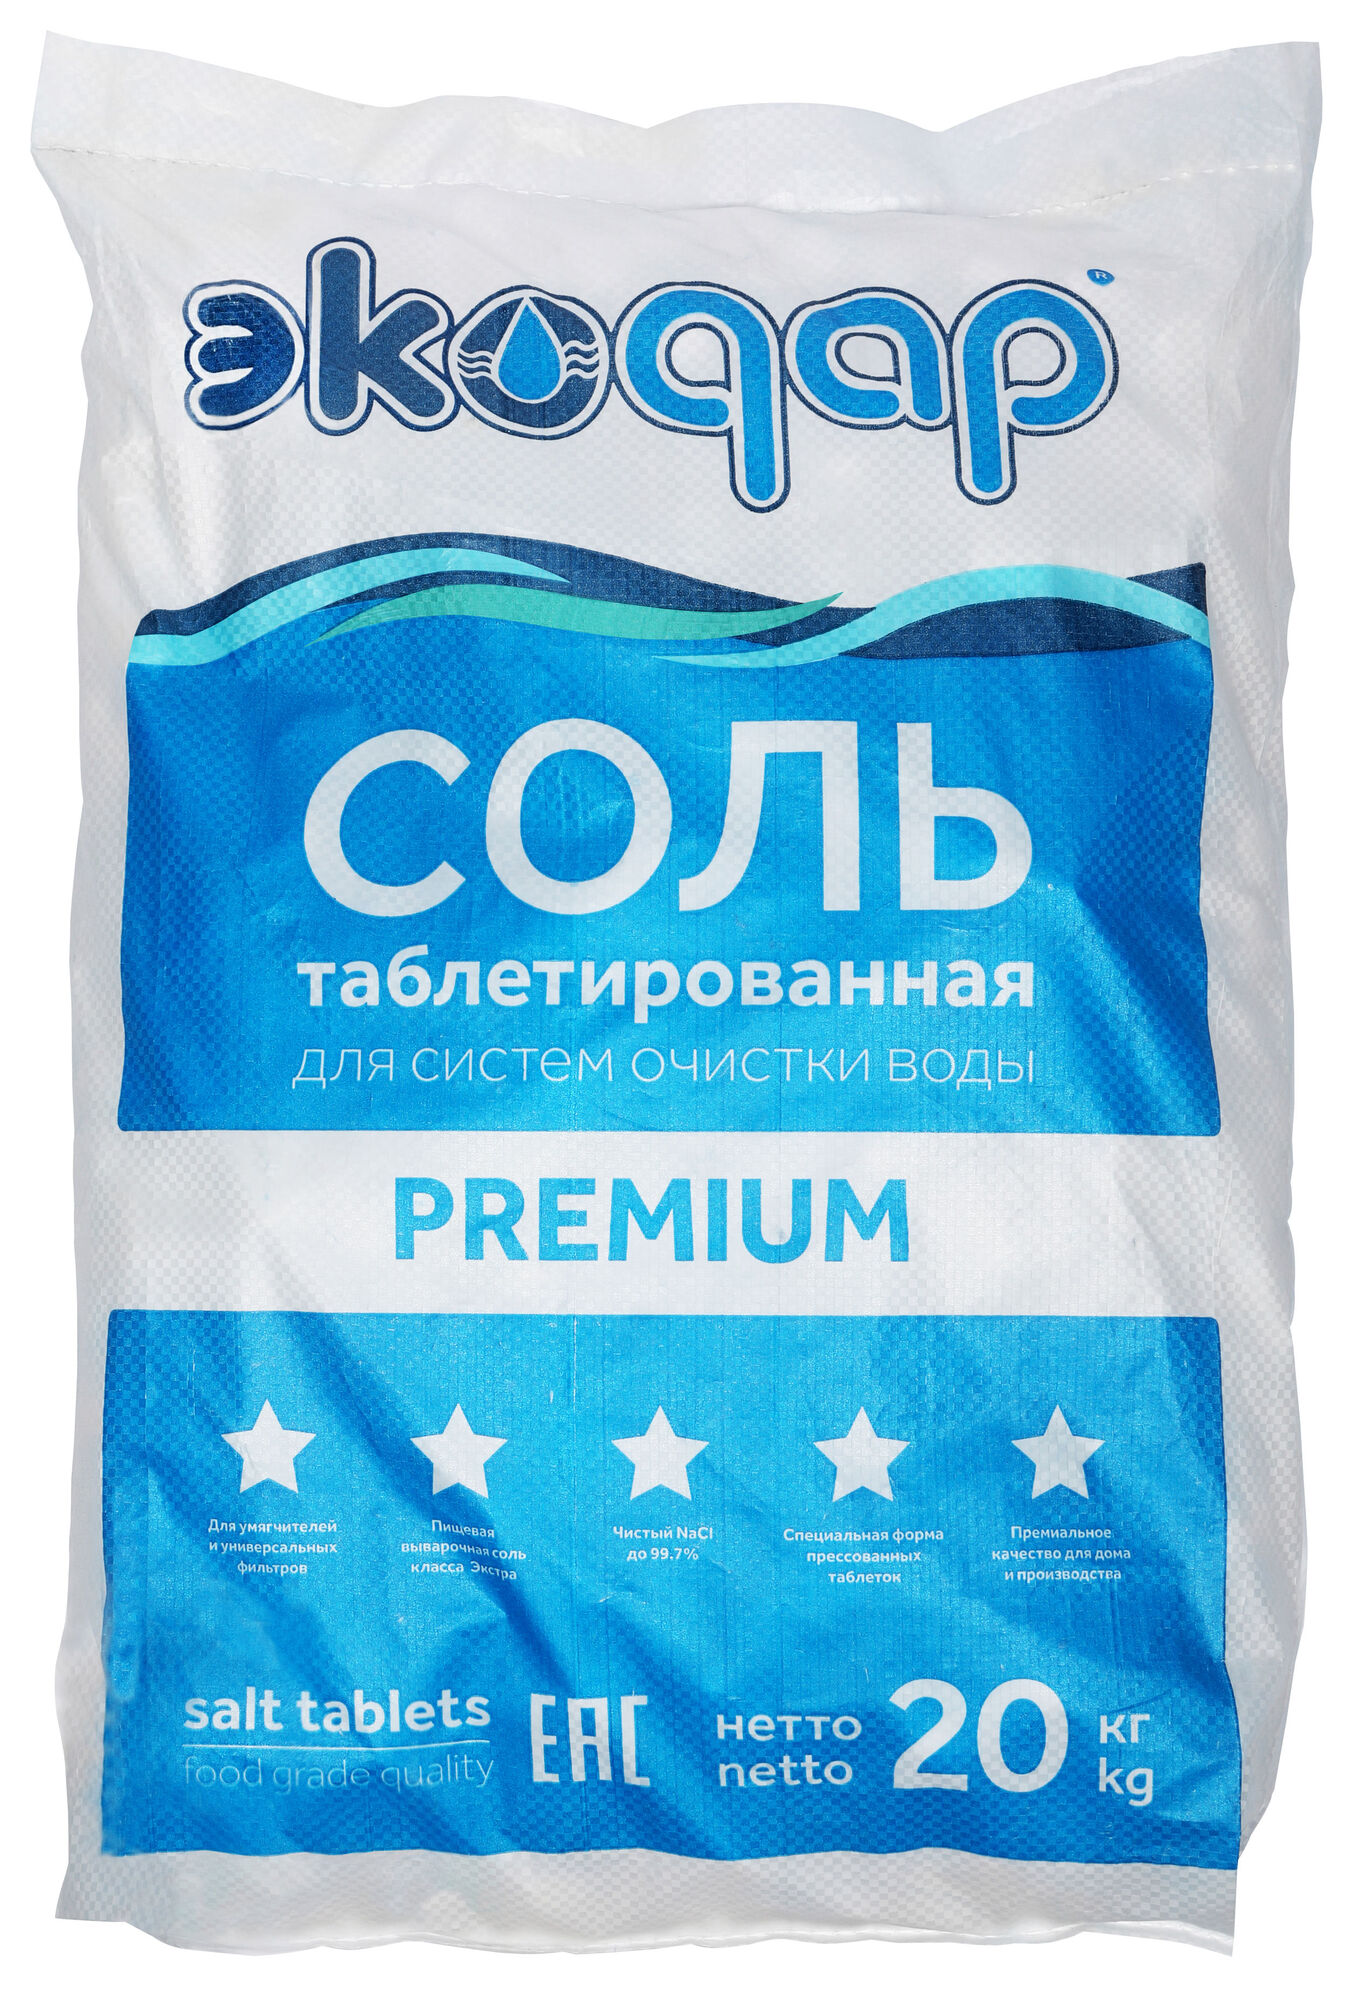 Соль таблетированная Экодар Premium для систем очистки воды